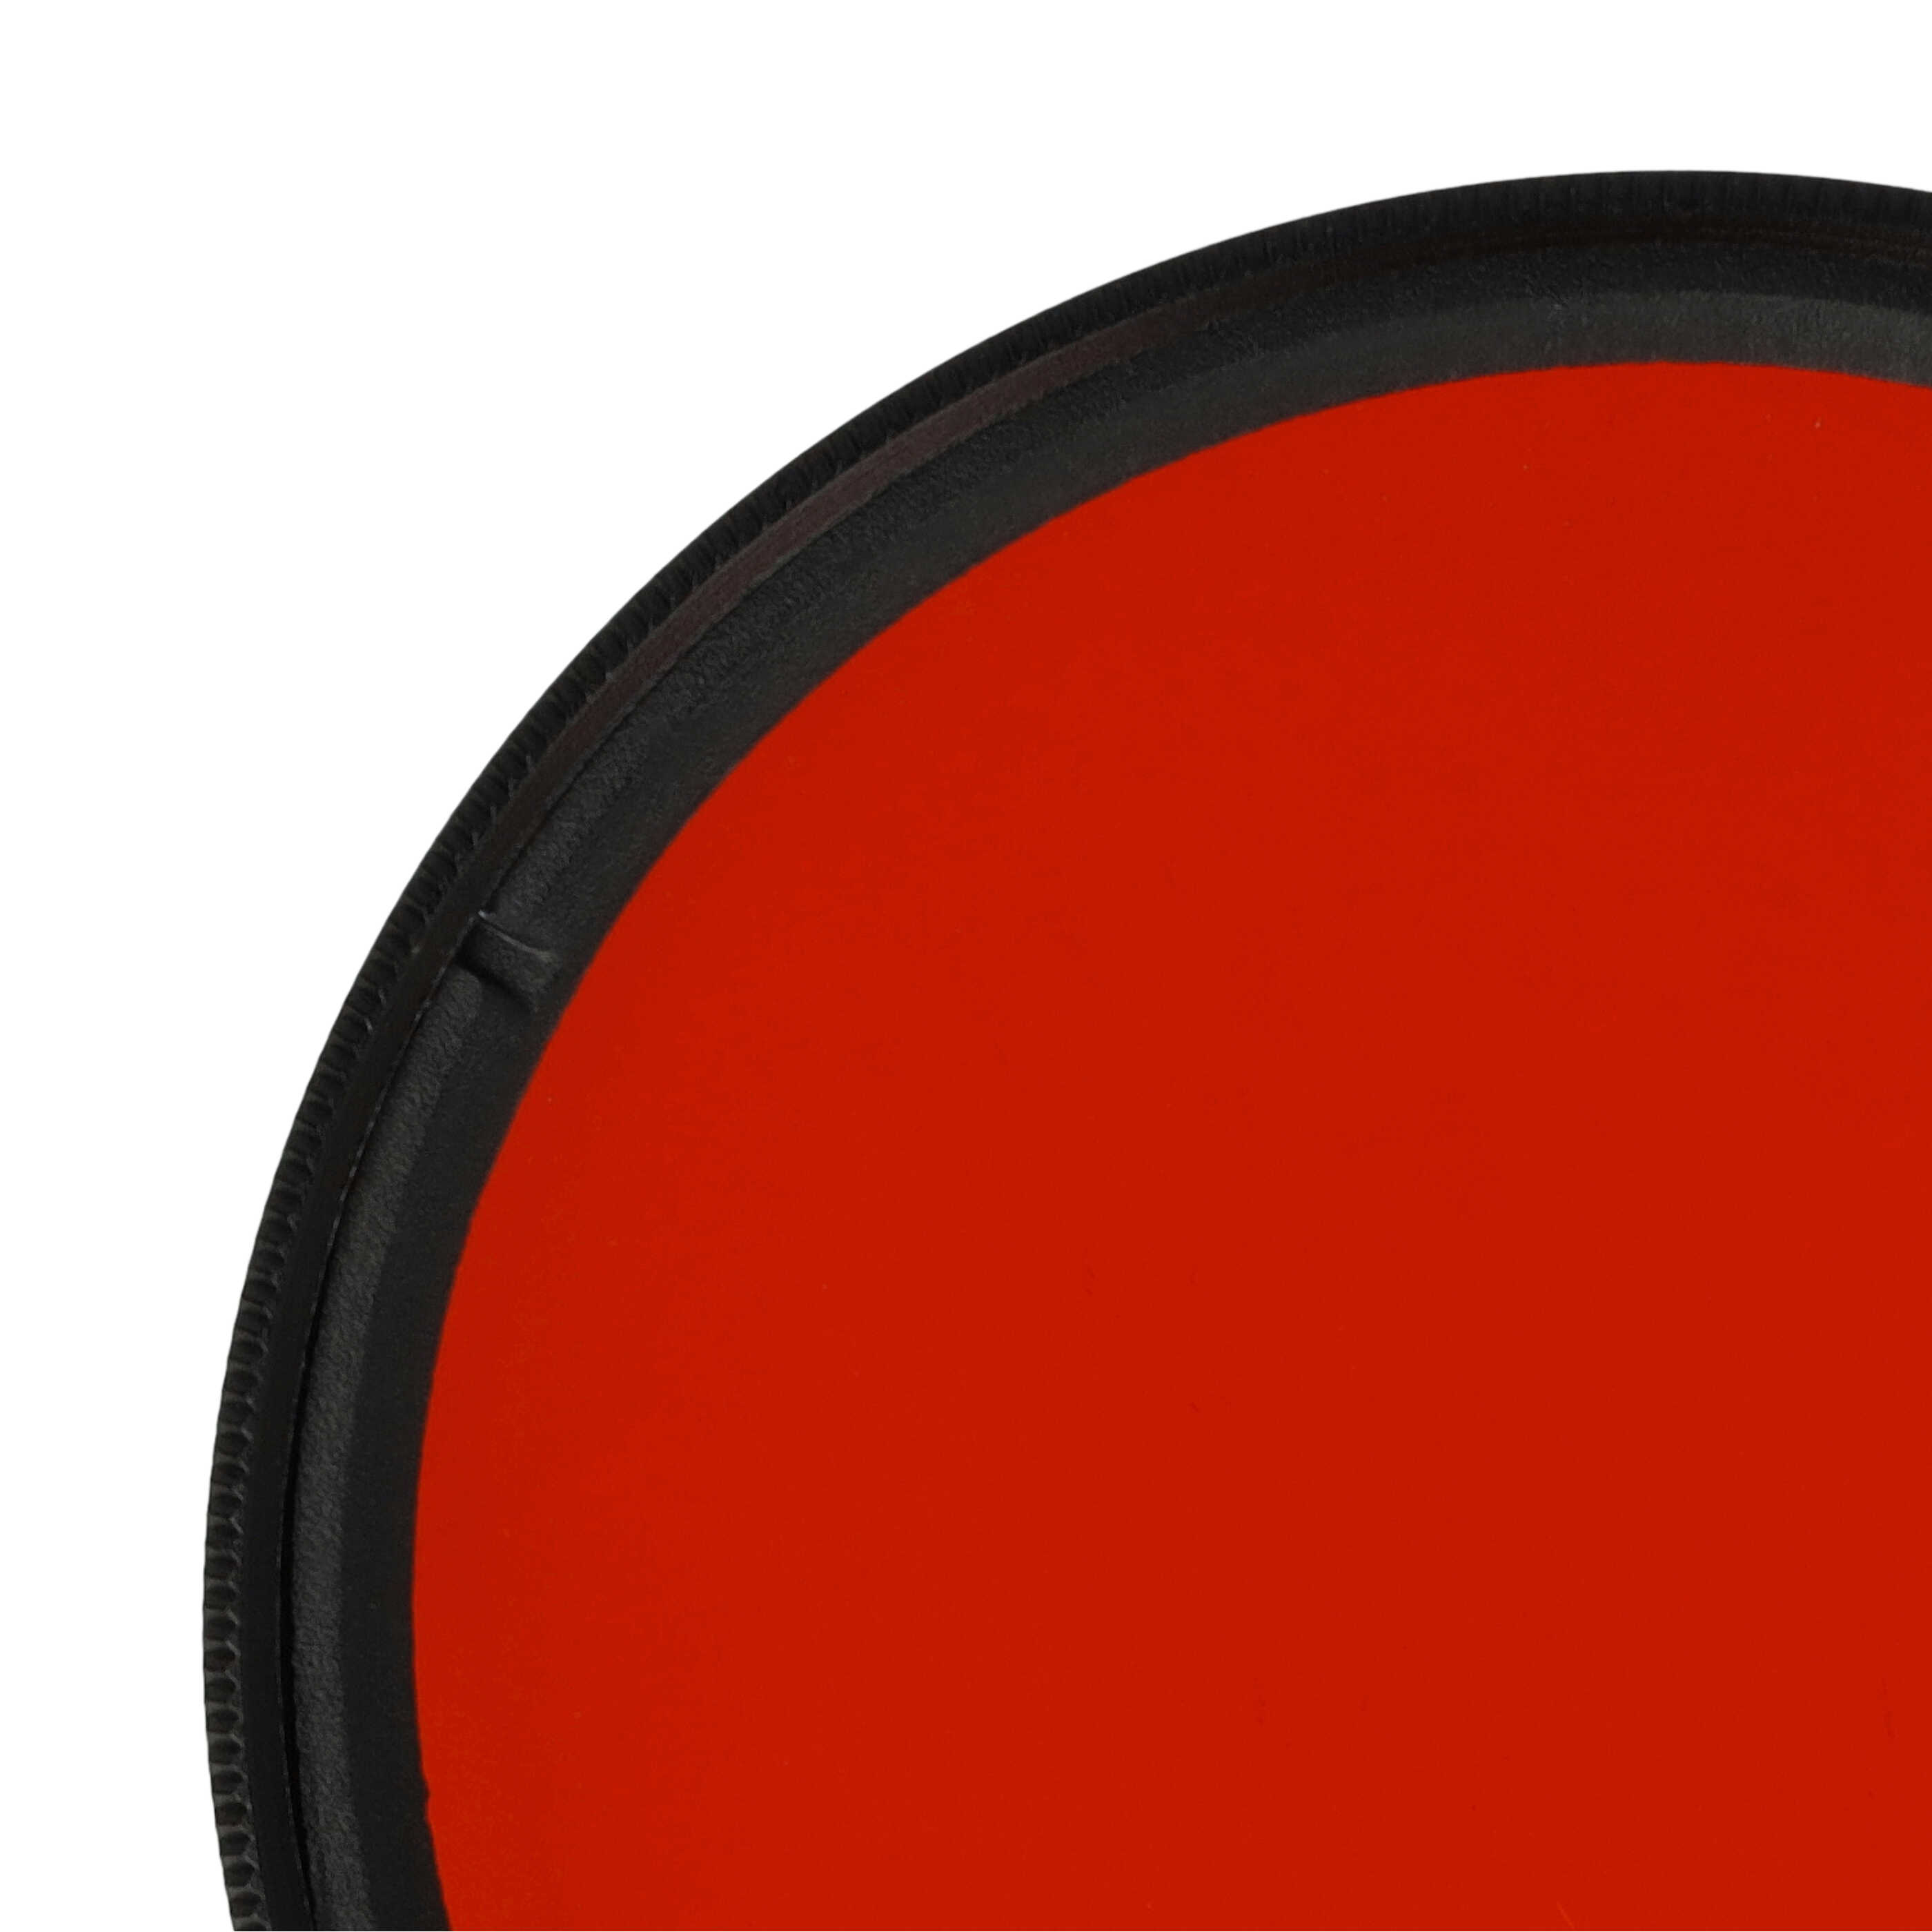 Filtro de color para objetivo de cámara con rosca de filtro de 55 mm - Filtro naranja